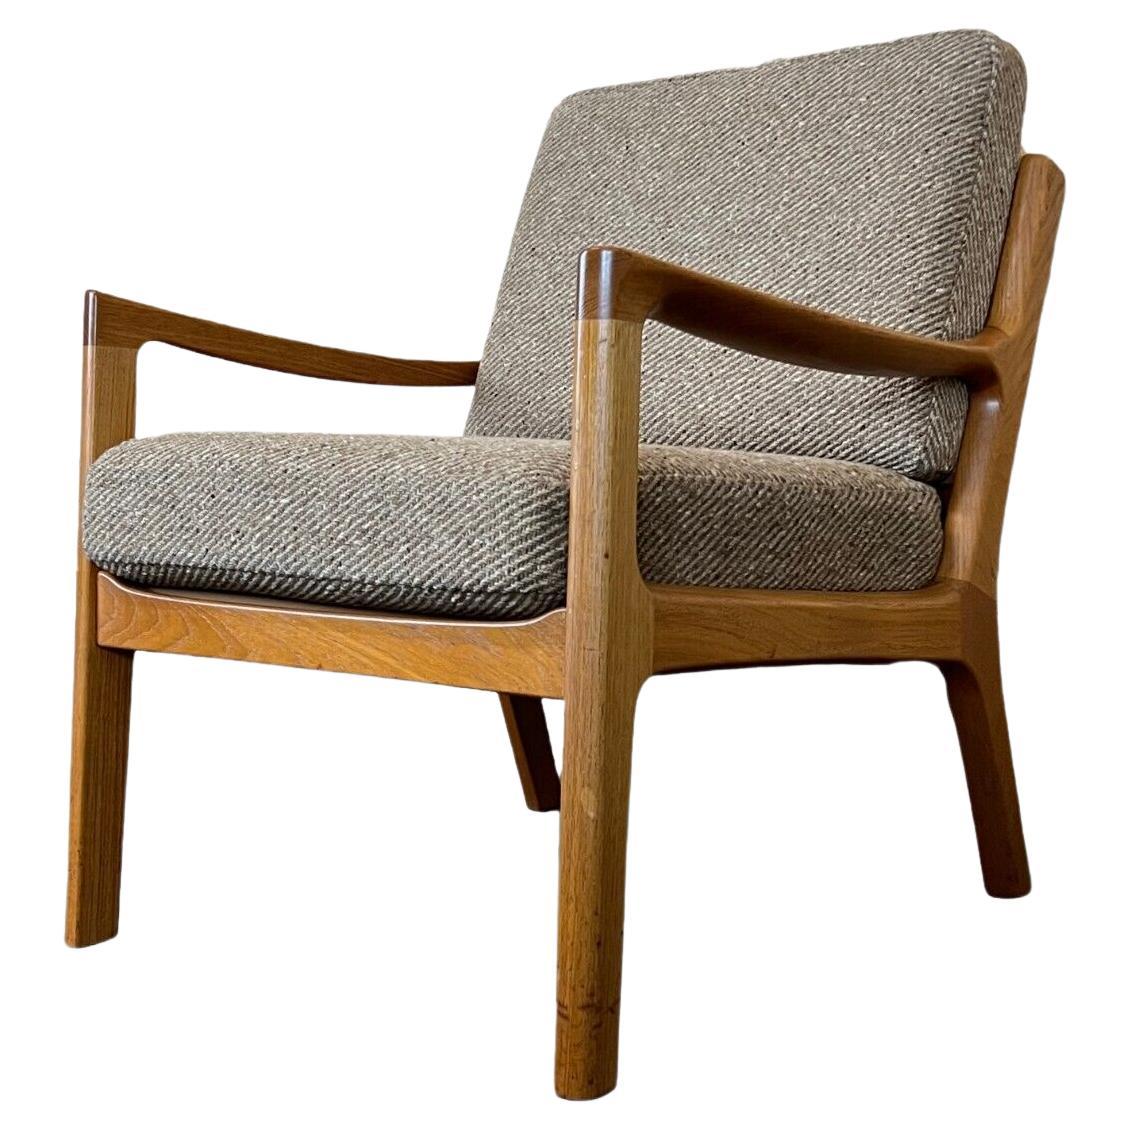 60s 70s Teak Easy Chair Armchair Ole Wanscher Poul Jeppesens Møbelfabrik